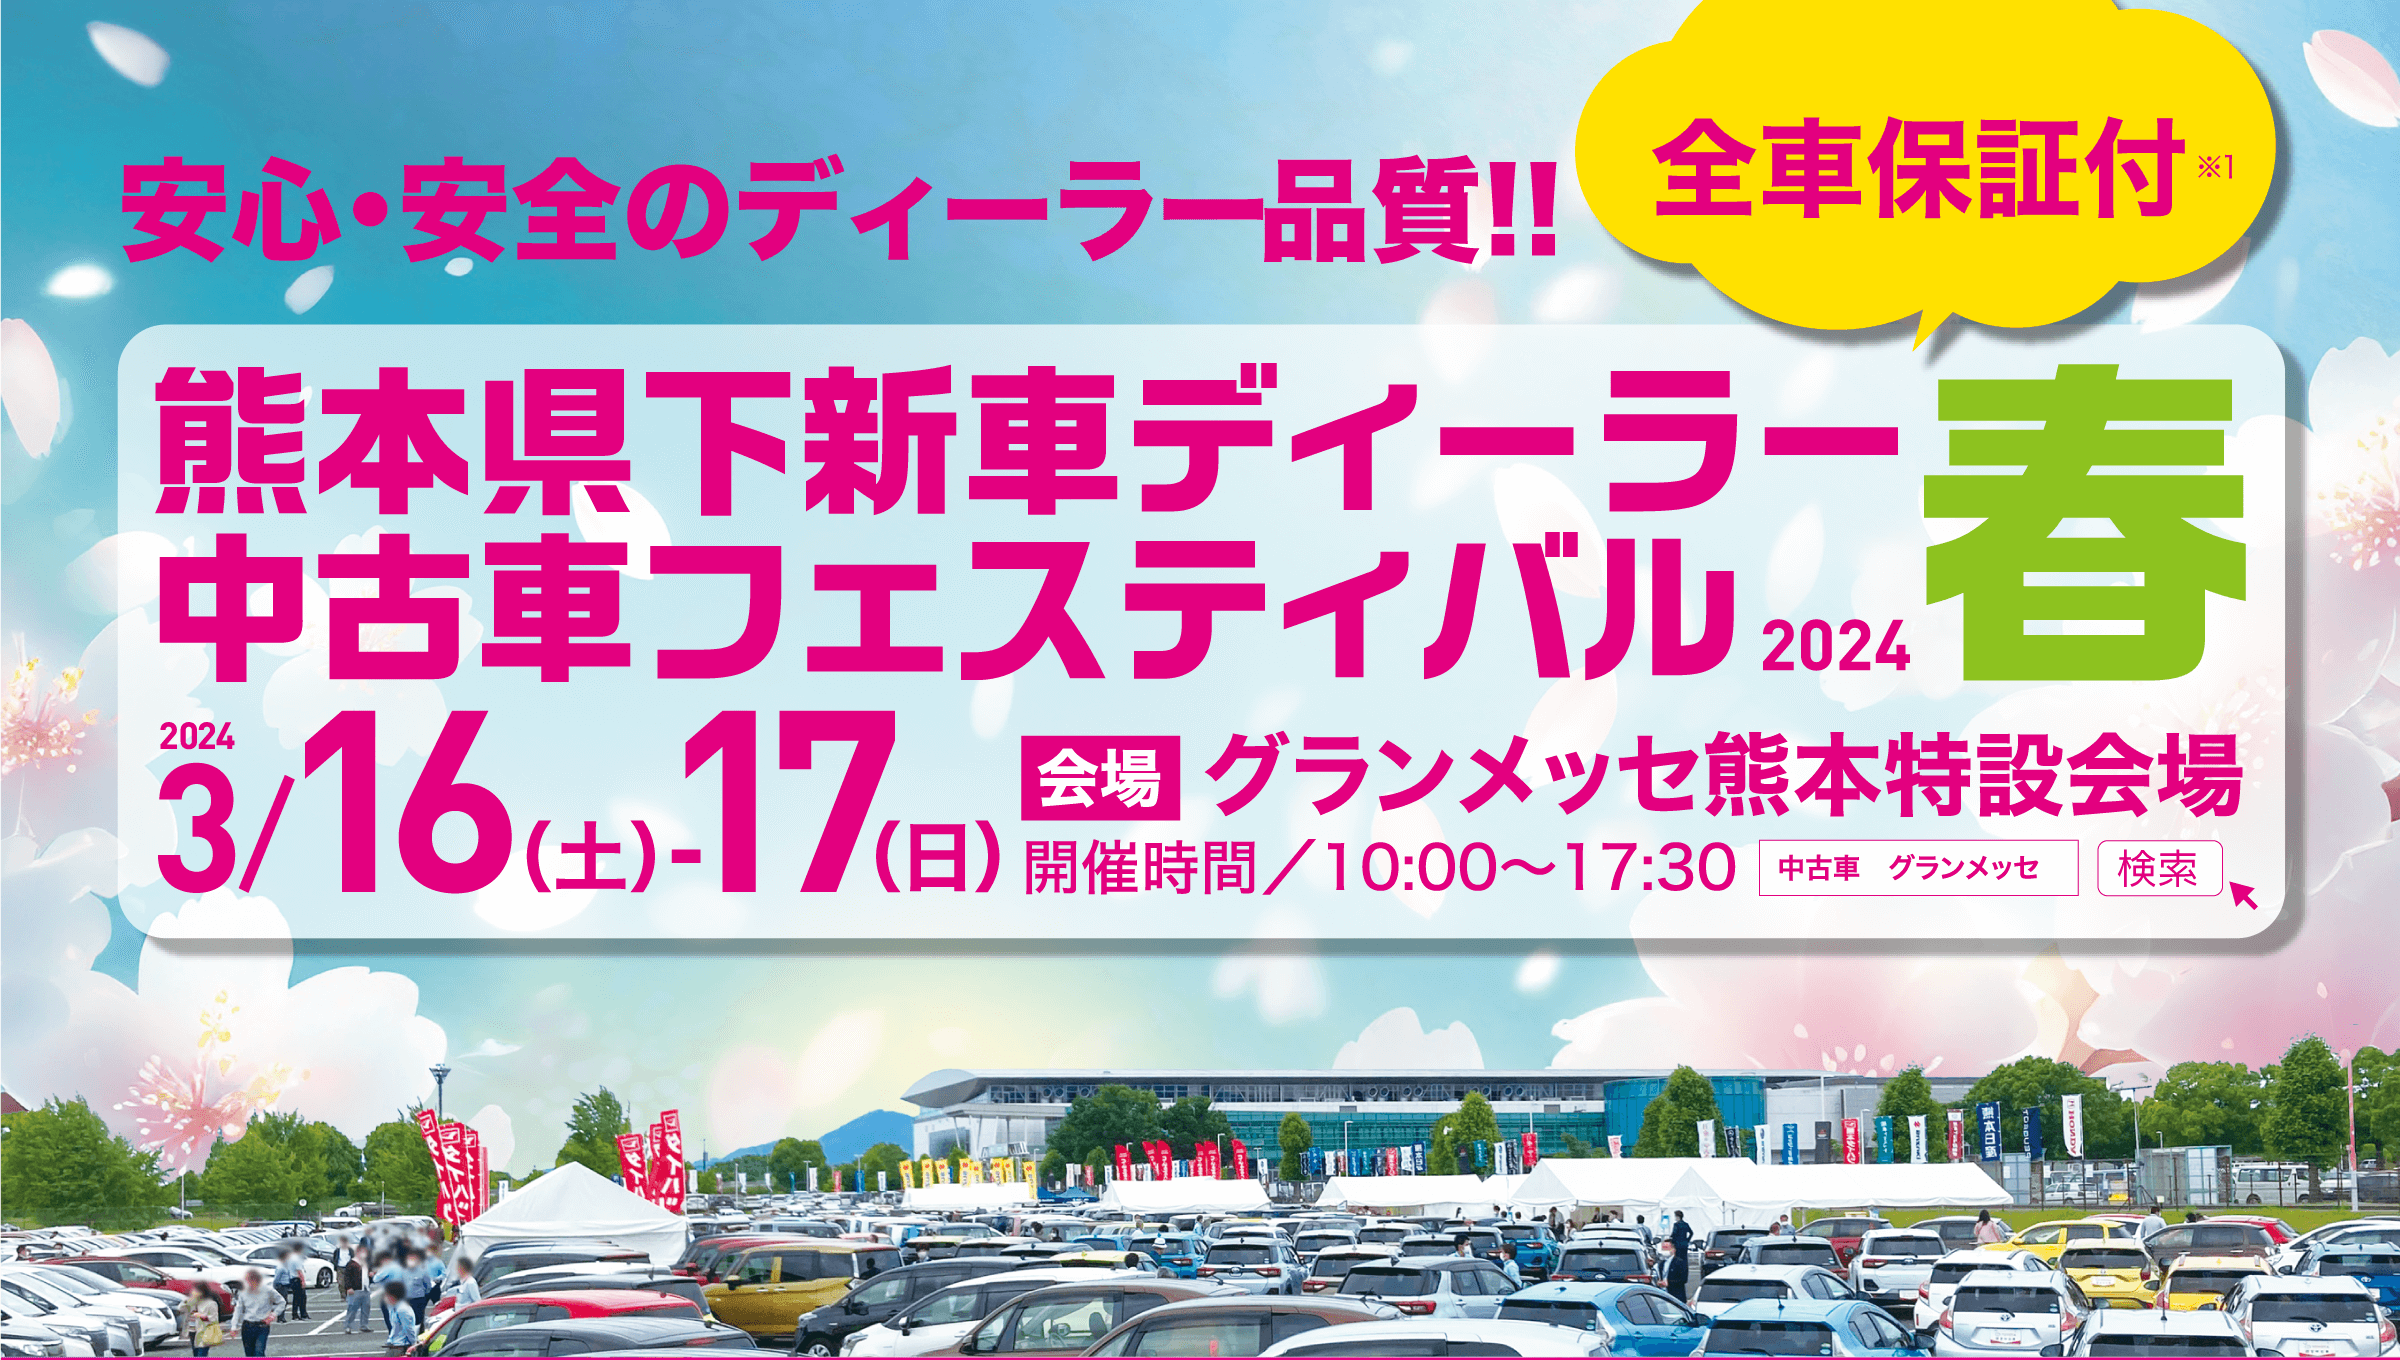 熊本県下新車ディーラー中古車フェスティバル2024春